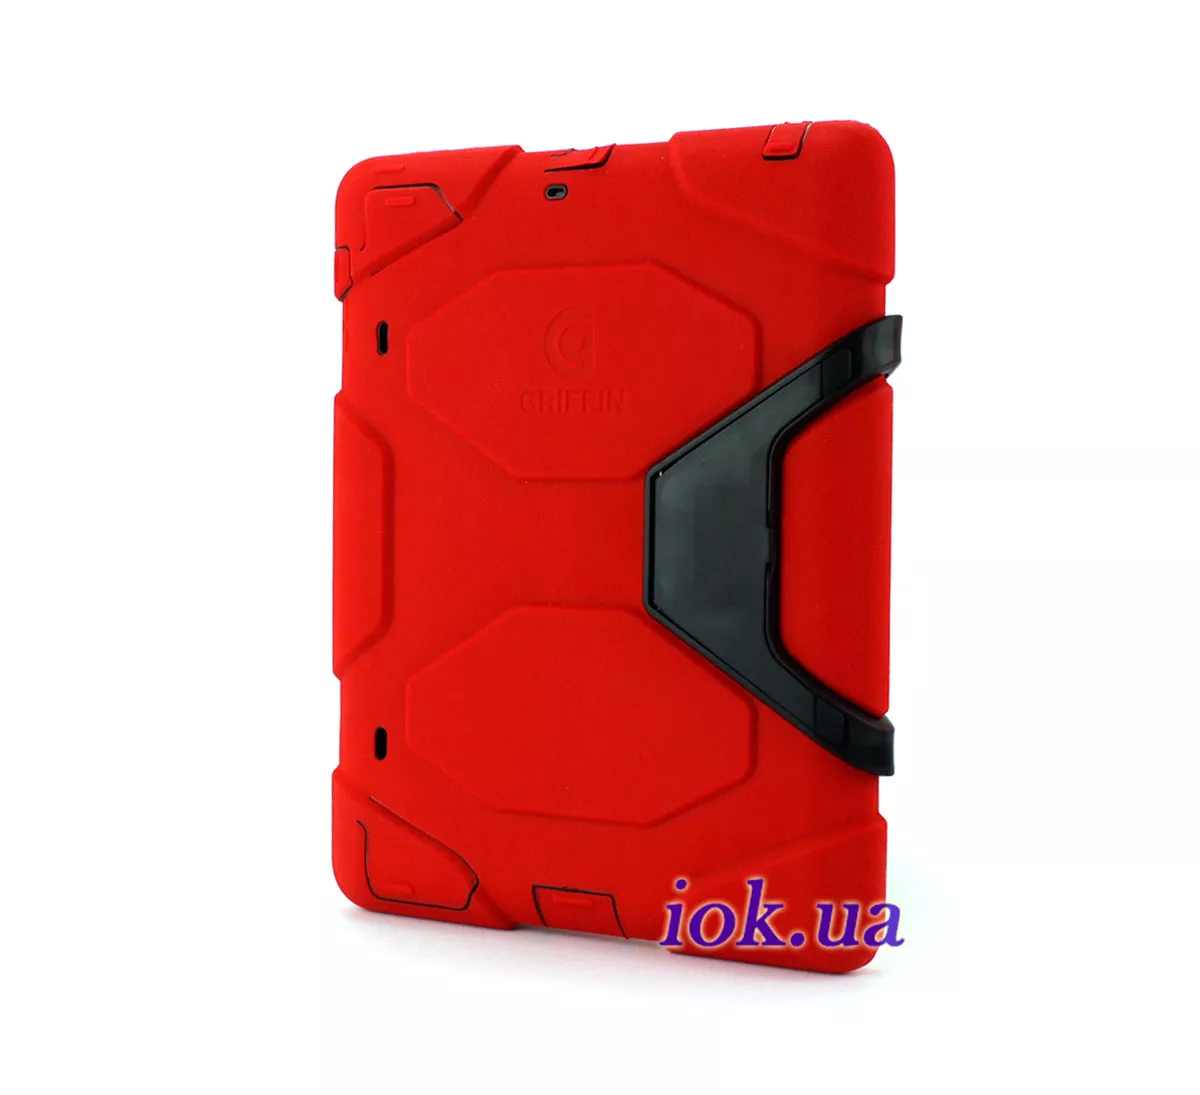 Красный каучуковый чехол для iPad 2/3/4 - Griffin Survivor